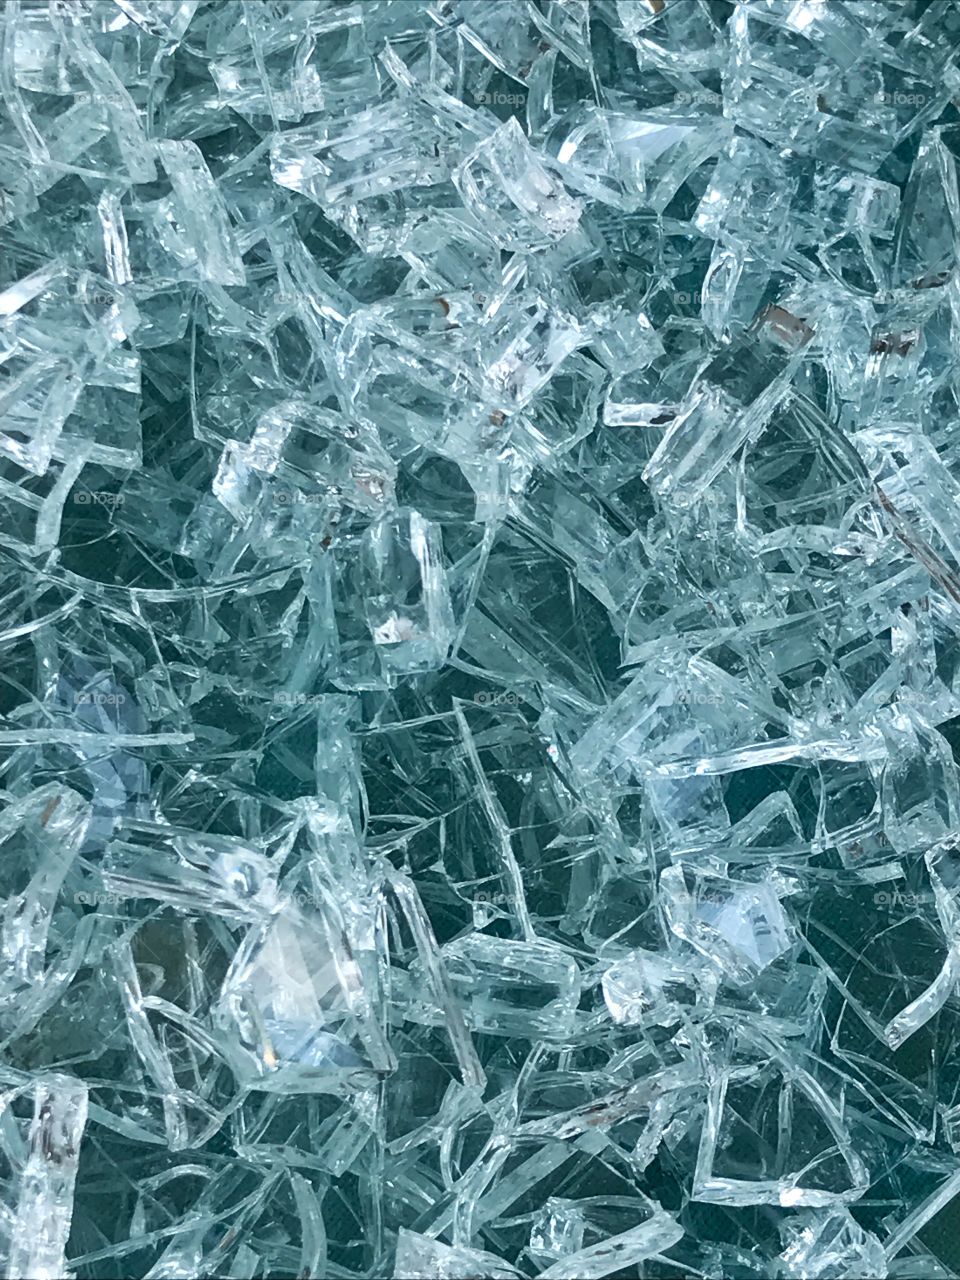 Close-up of broken glass